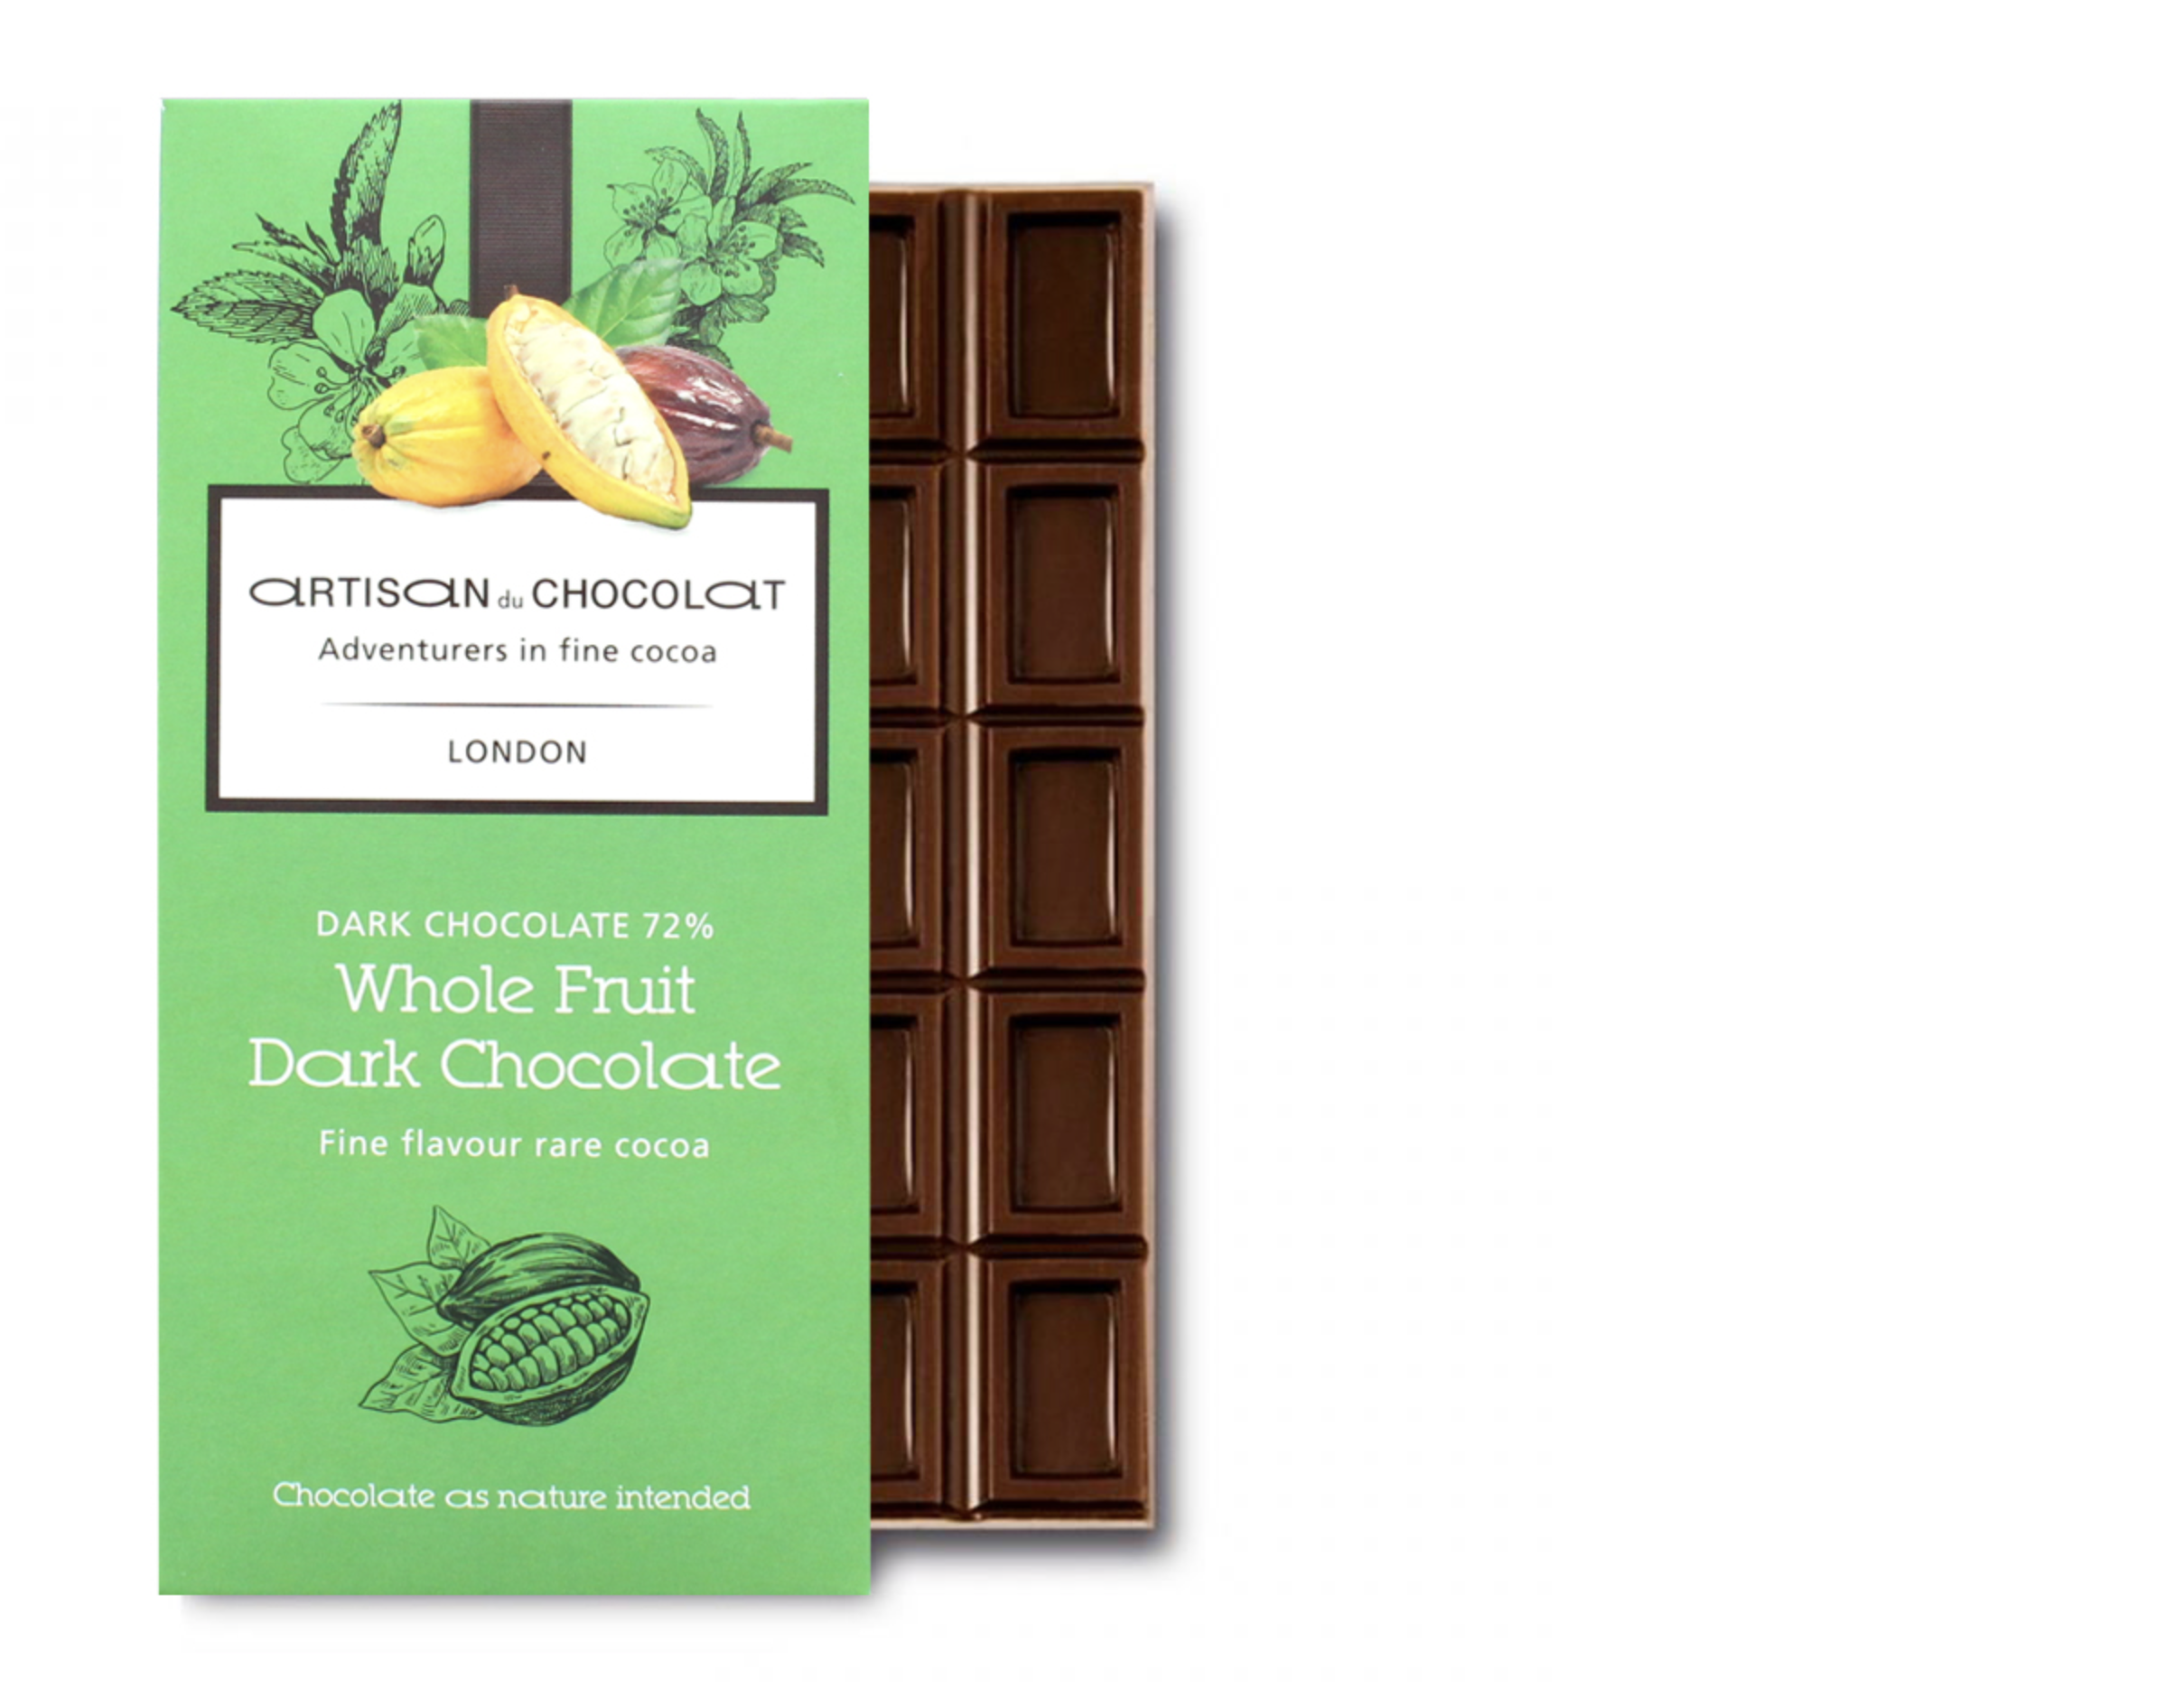 Artisan du Chocolat new bar uses the whole cacao fruit